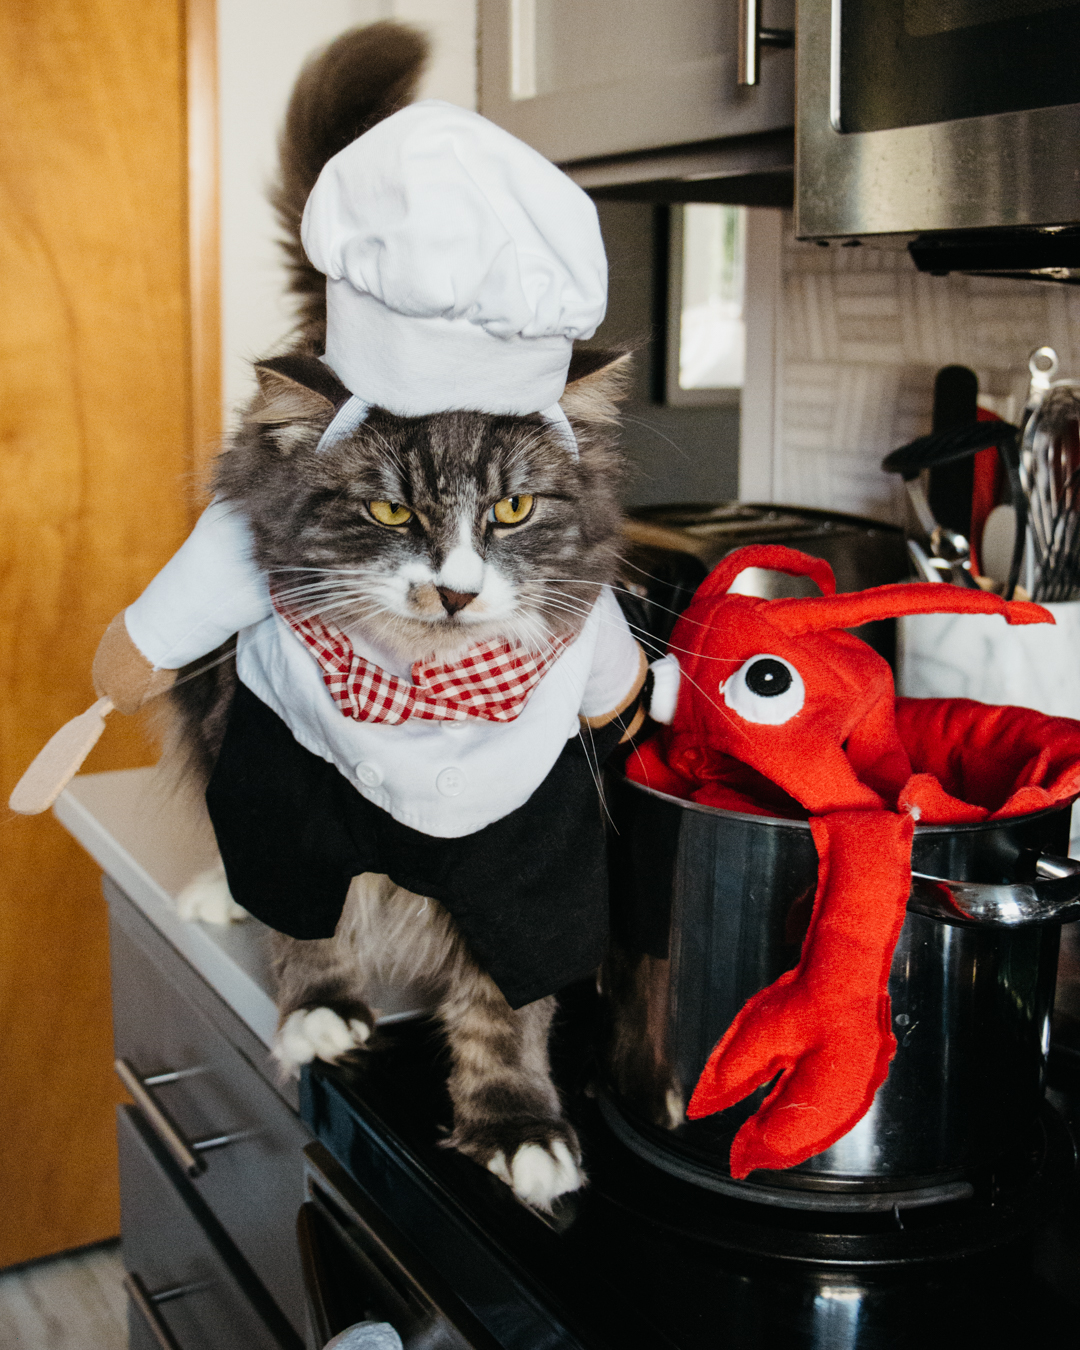 revenge on last years lobster costume